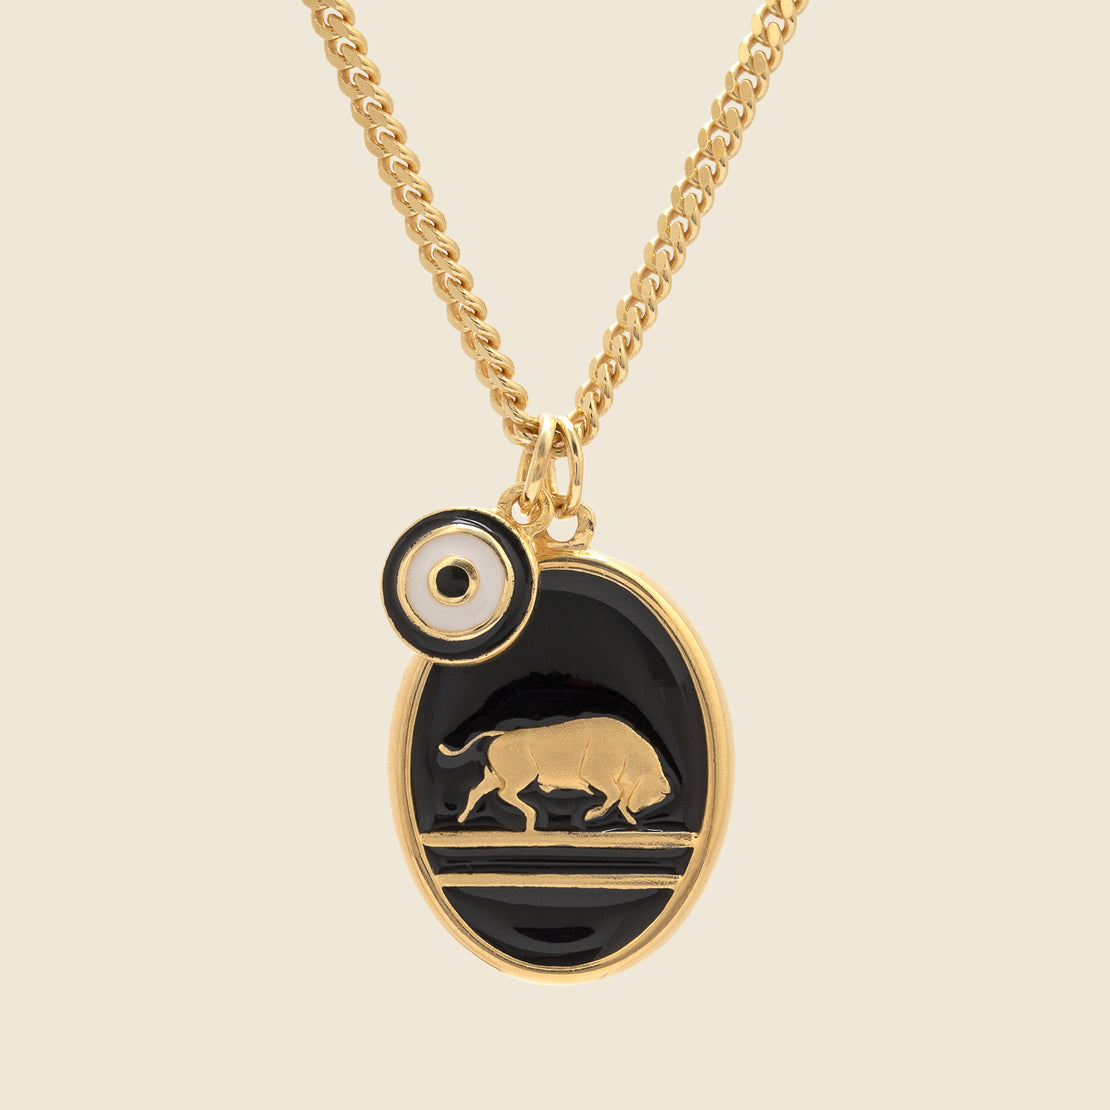 Miansai Oxen Pendant Necklace - Gold Vermeil/Black Enamel